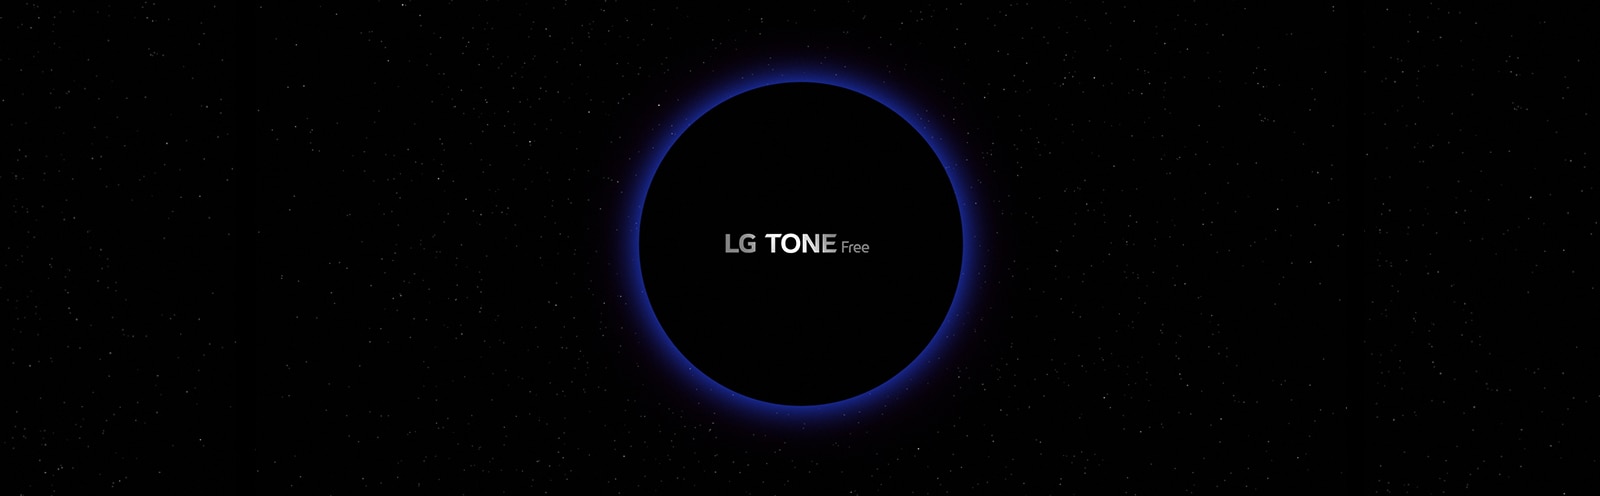 Slika galaksije i kruga osvijetljenog plavom bojom po sredini s riječima „LG TONE Free” u krugu